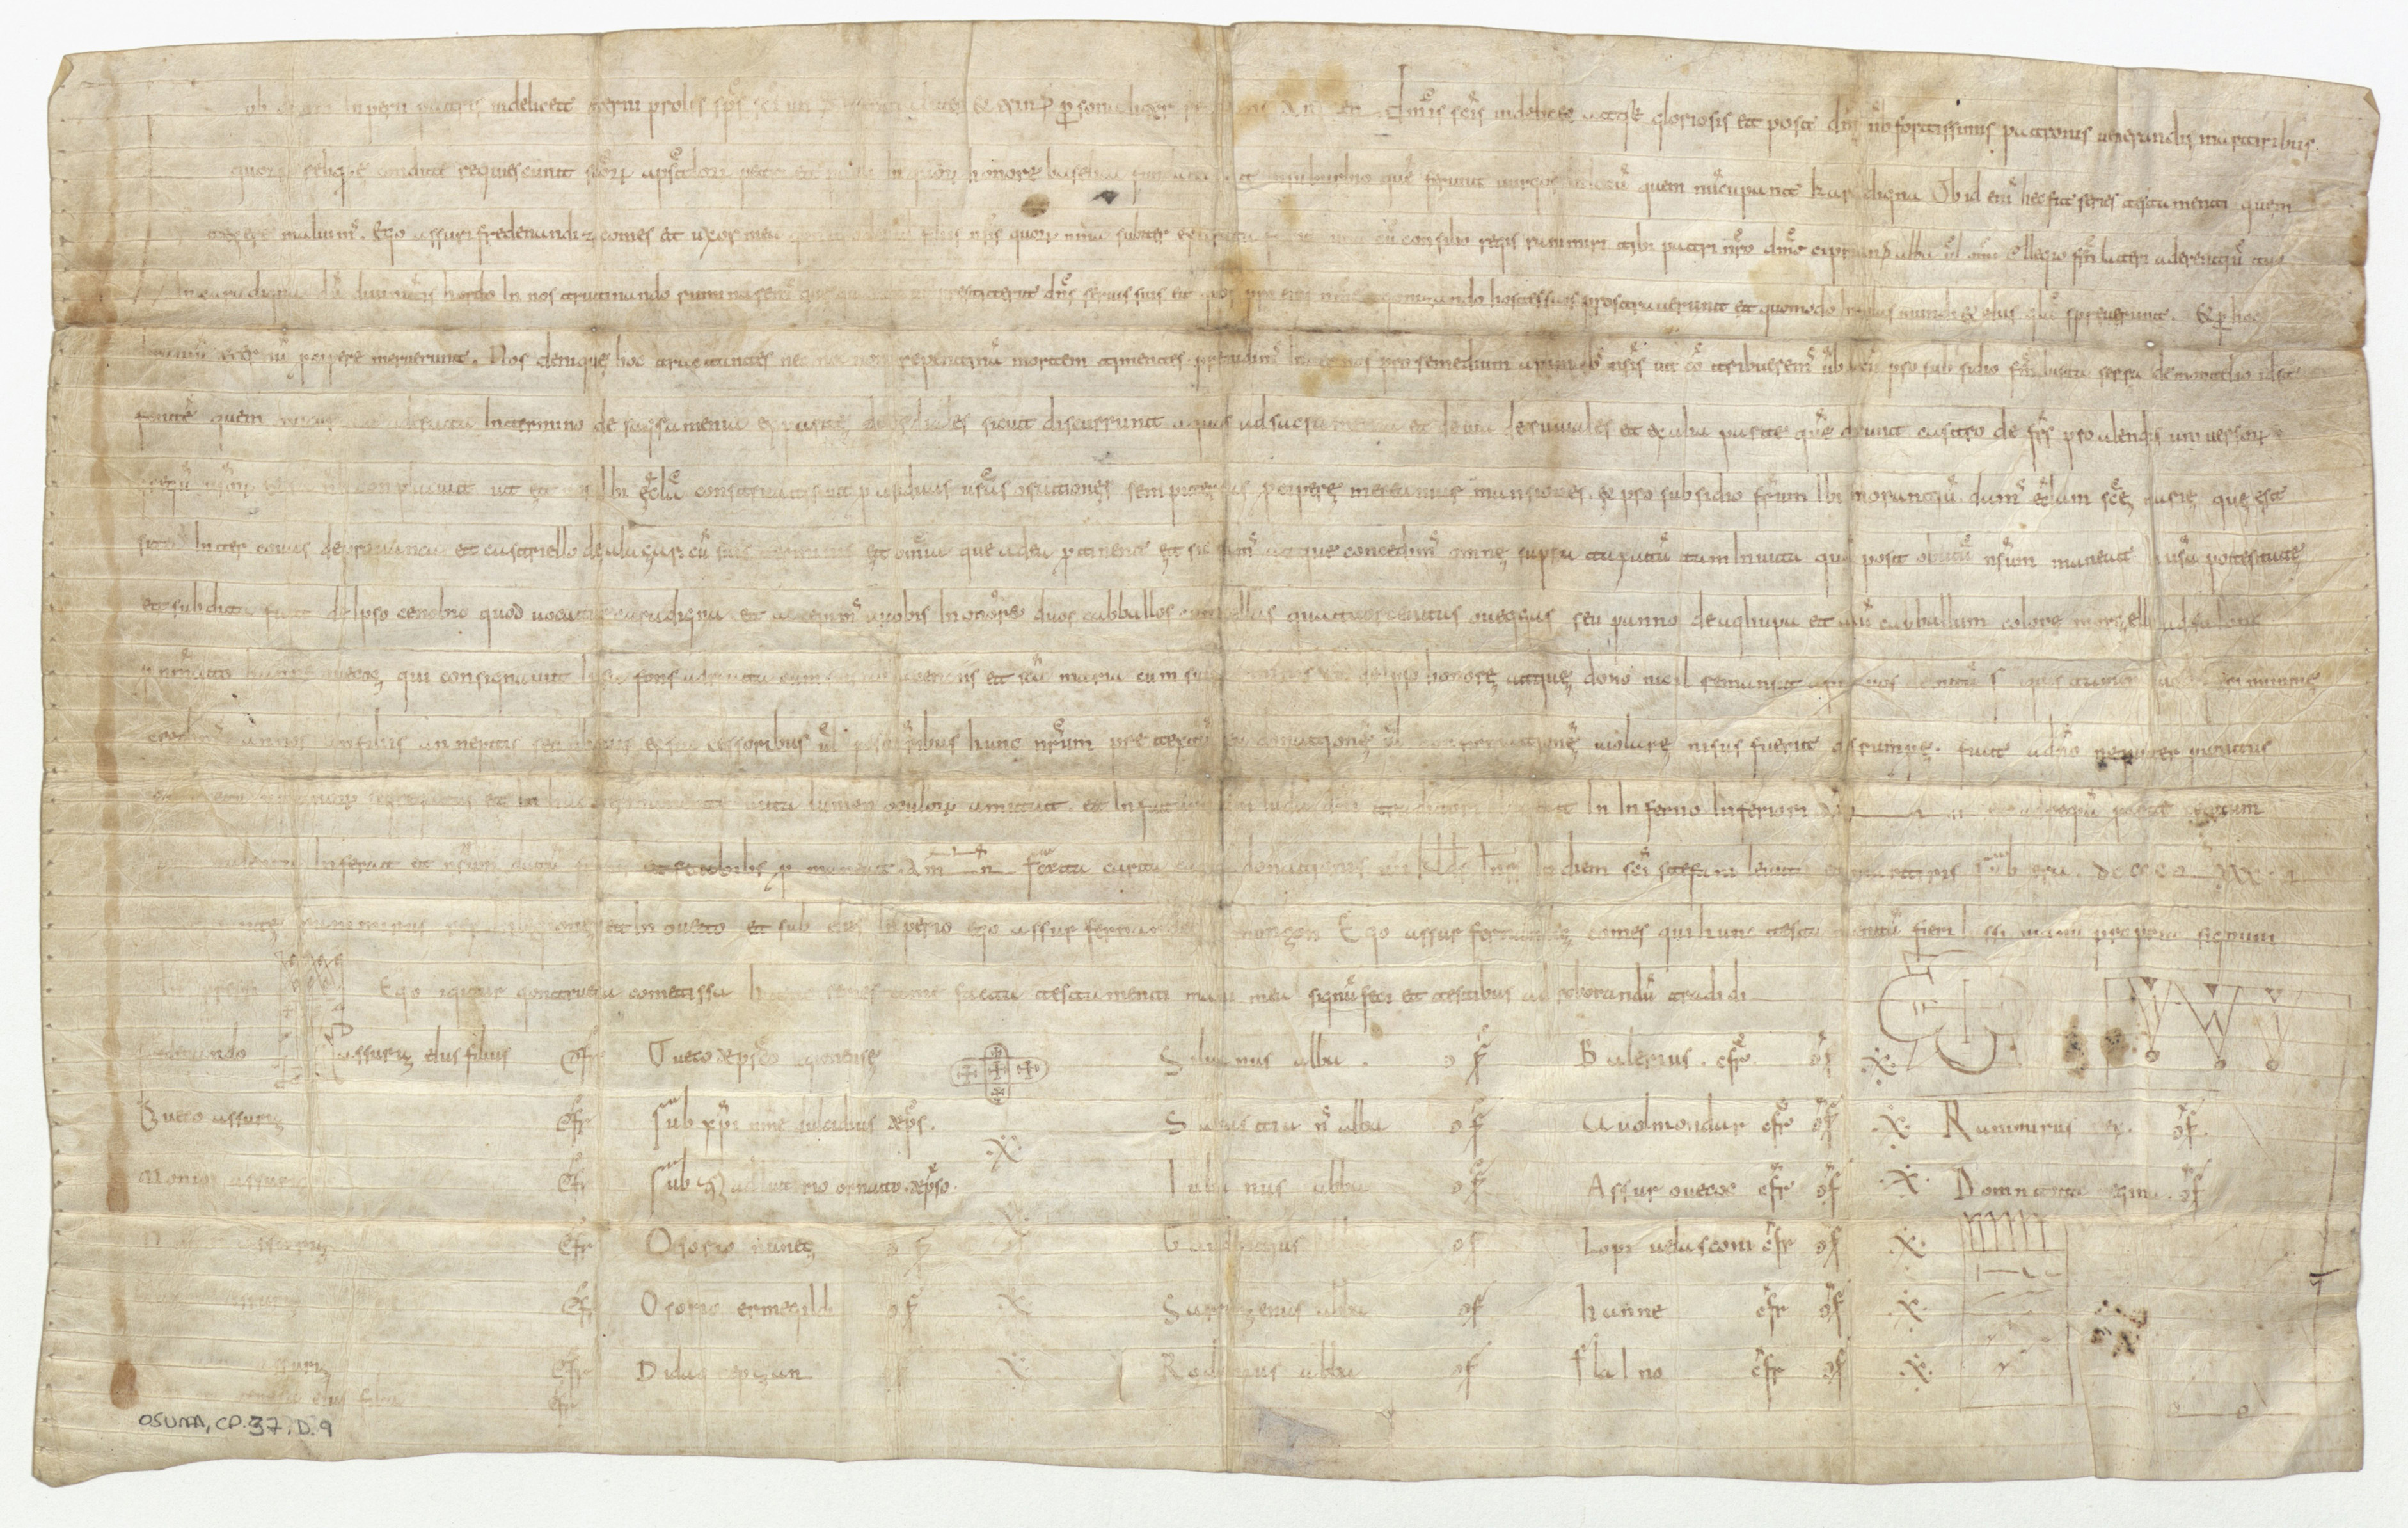 Una investigación explora la falsificación de documentos en la Edad Media